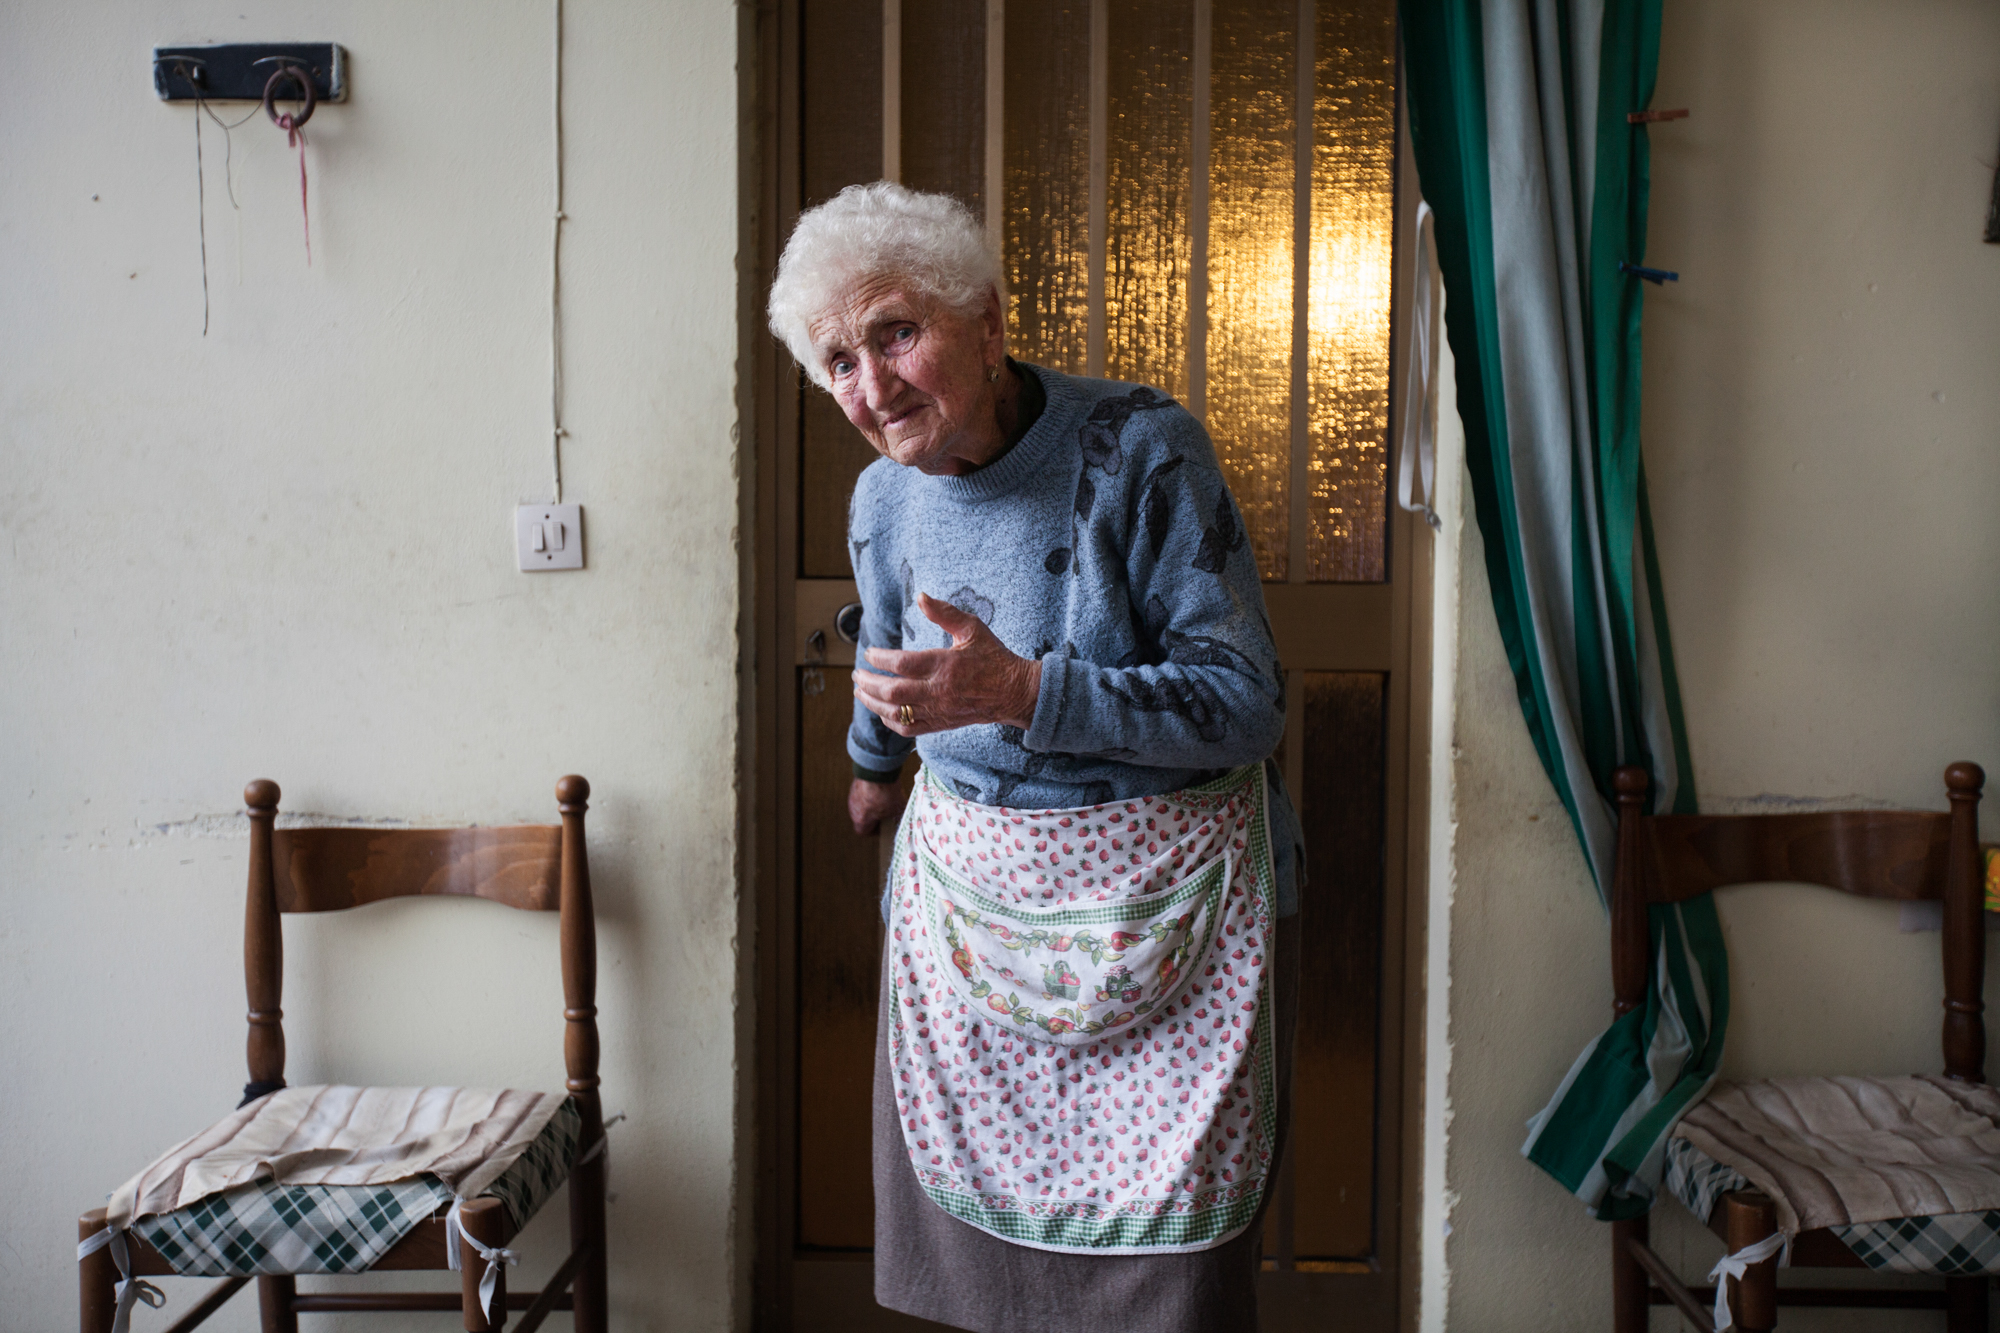  La signora Luigia di 94 anni. Vive nella fattoria nella periferia sud di Brescia dal 1921. Si è sempre nutrita dei frutti della terra ed il tasso di PCB nel suo sangue è altissimo.Brescia / Italia. Ottobre 2013 